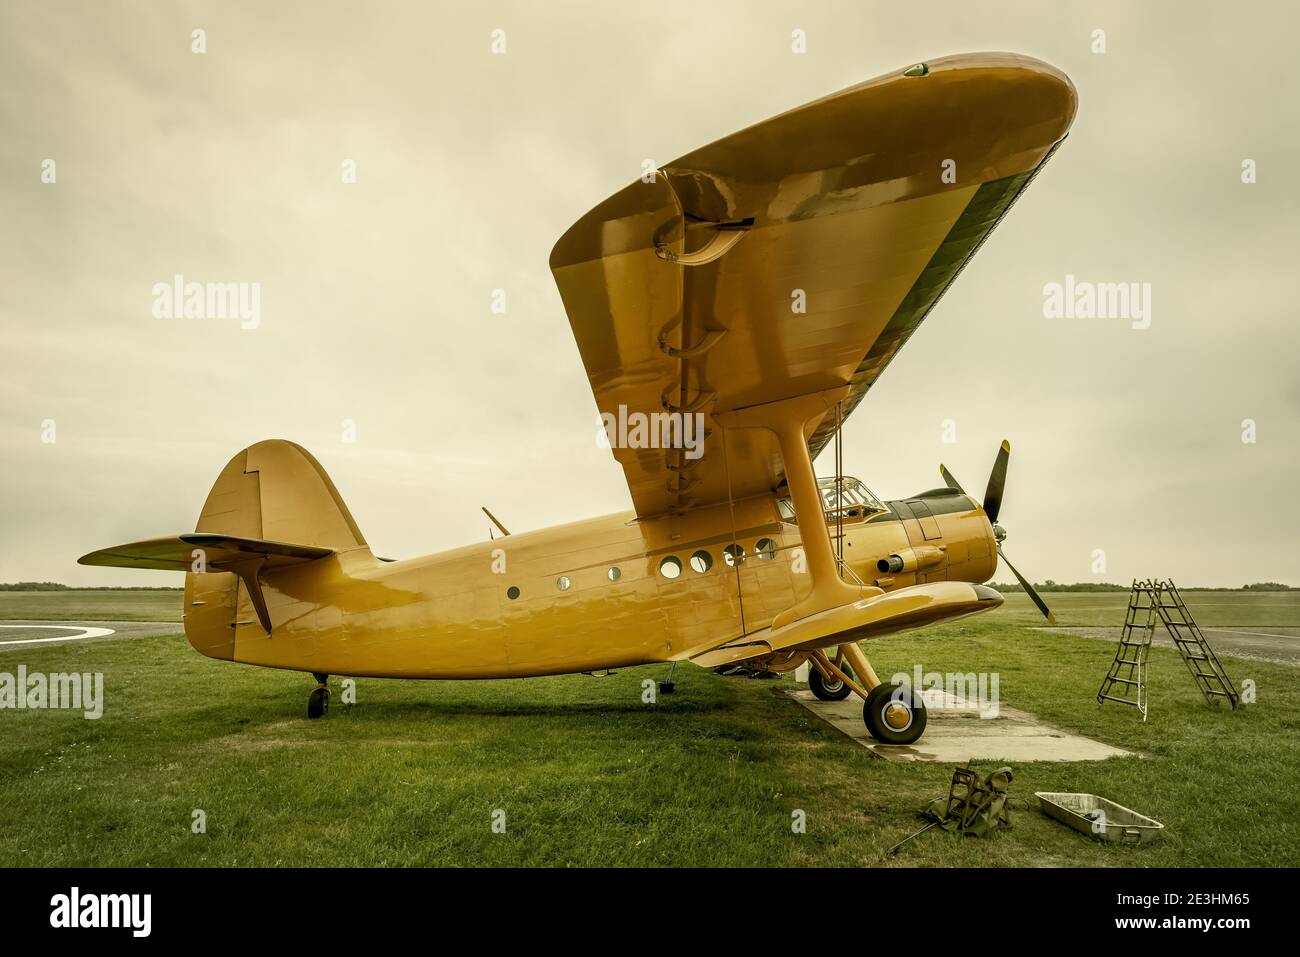 aviones históricos recibe servicio en un prado Foto de stock